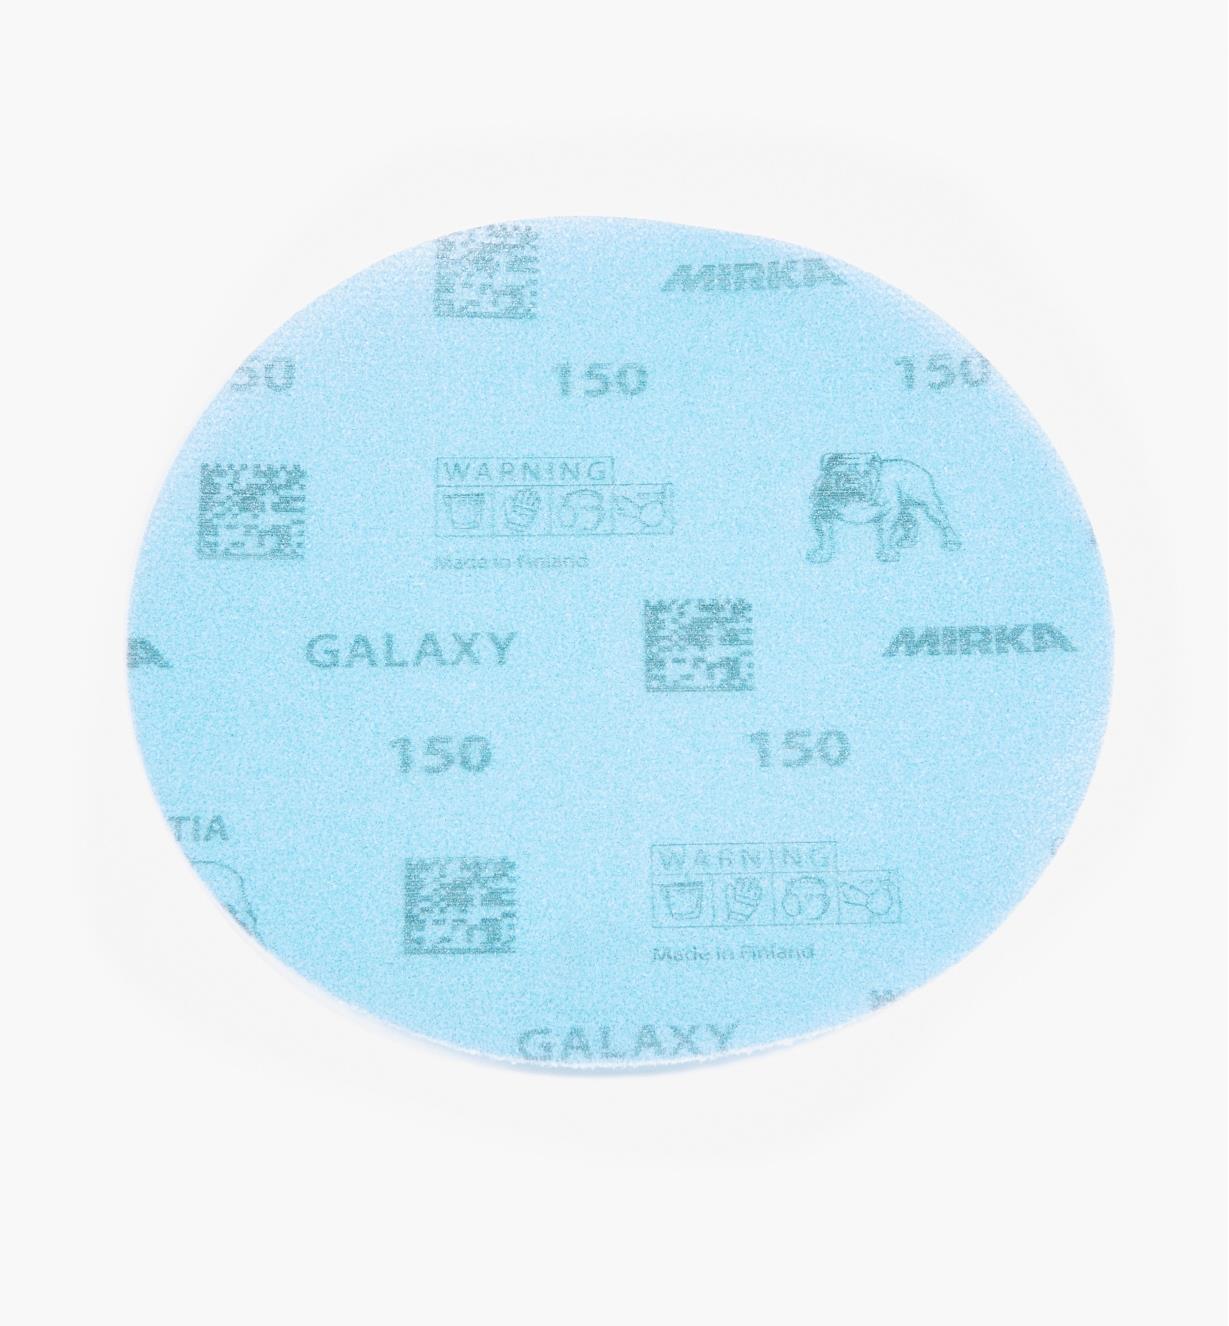 08K2106 - Disque abrasif autoagrippant Galaxy, 6 po, grain 150, l'unité